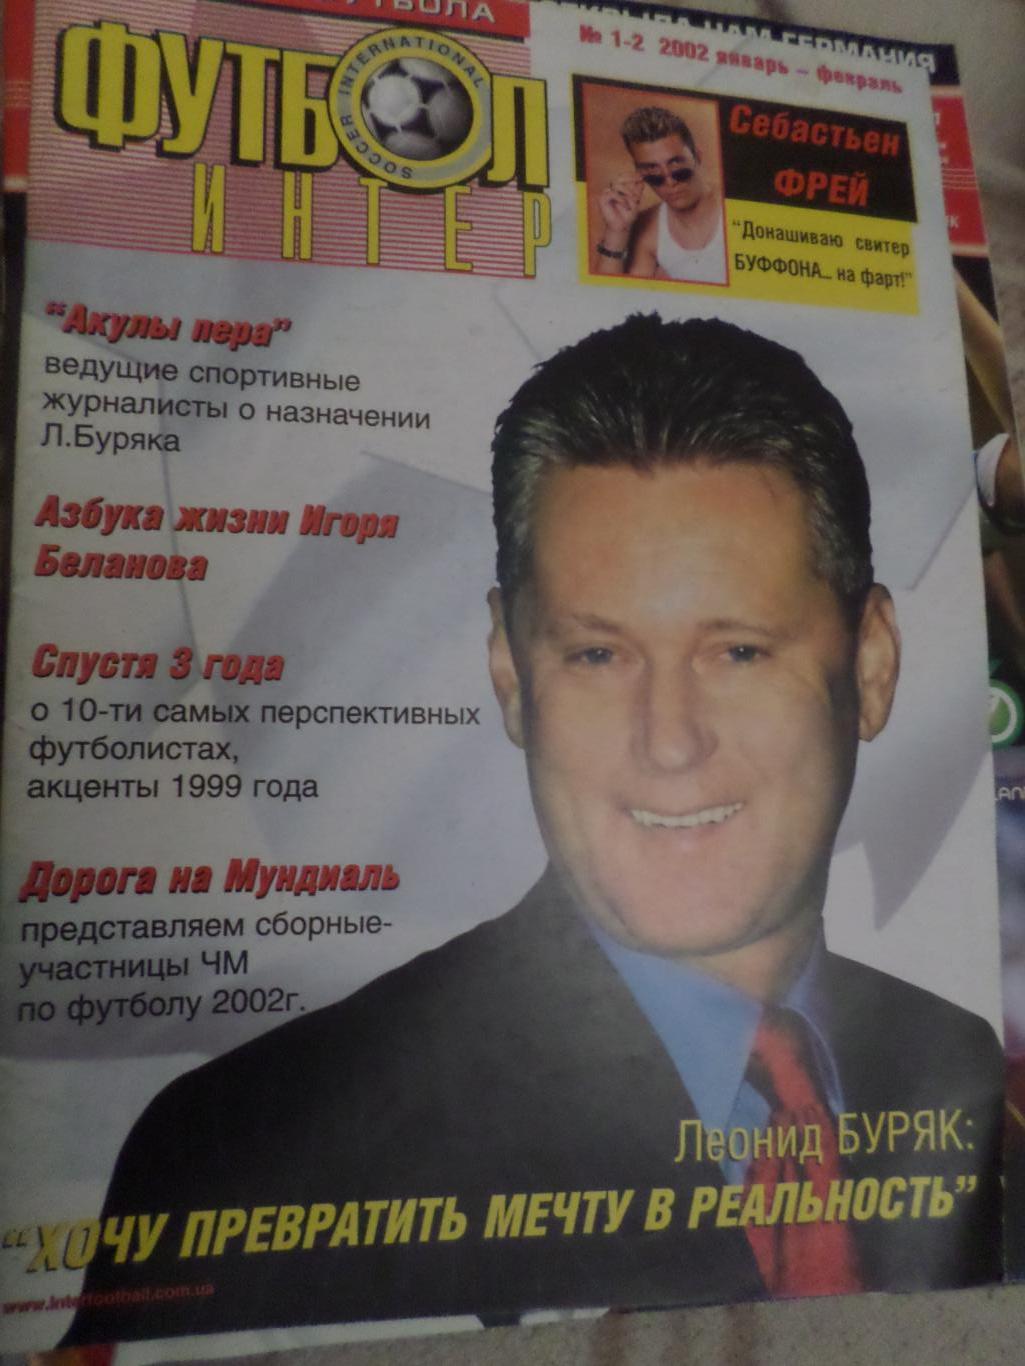 журнал Футбол-Интер № 1-2 2002 г